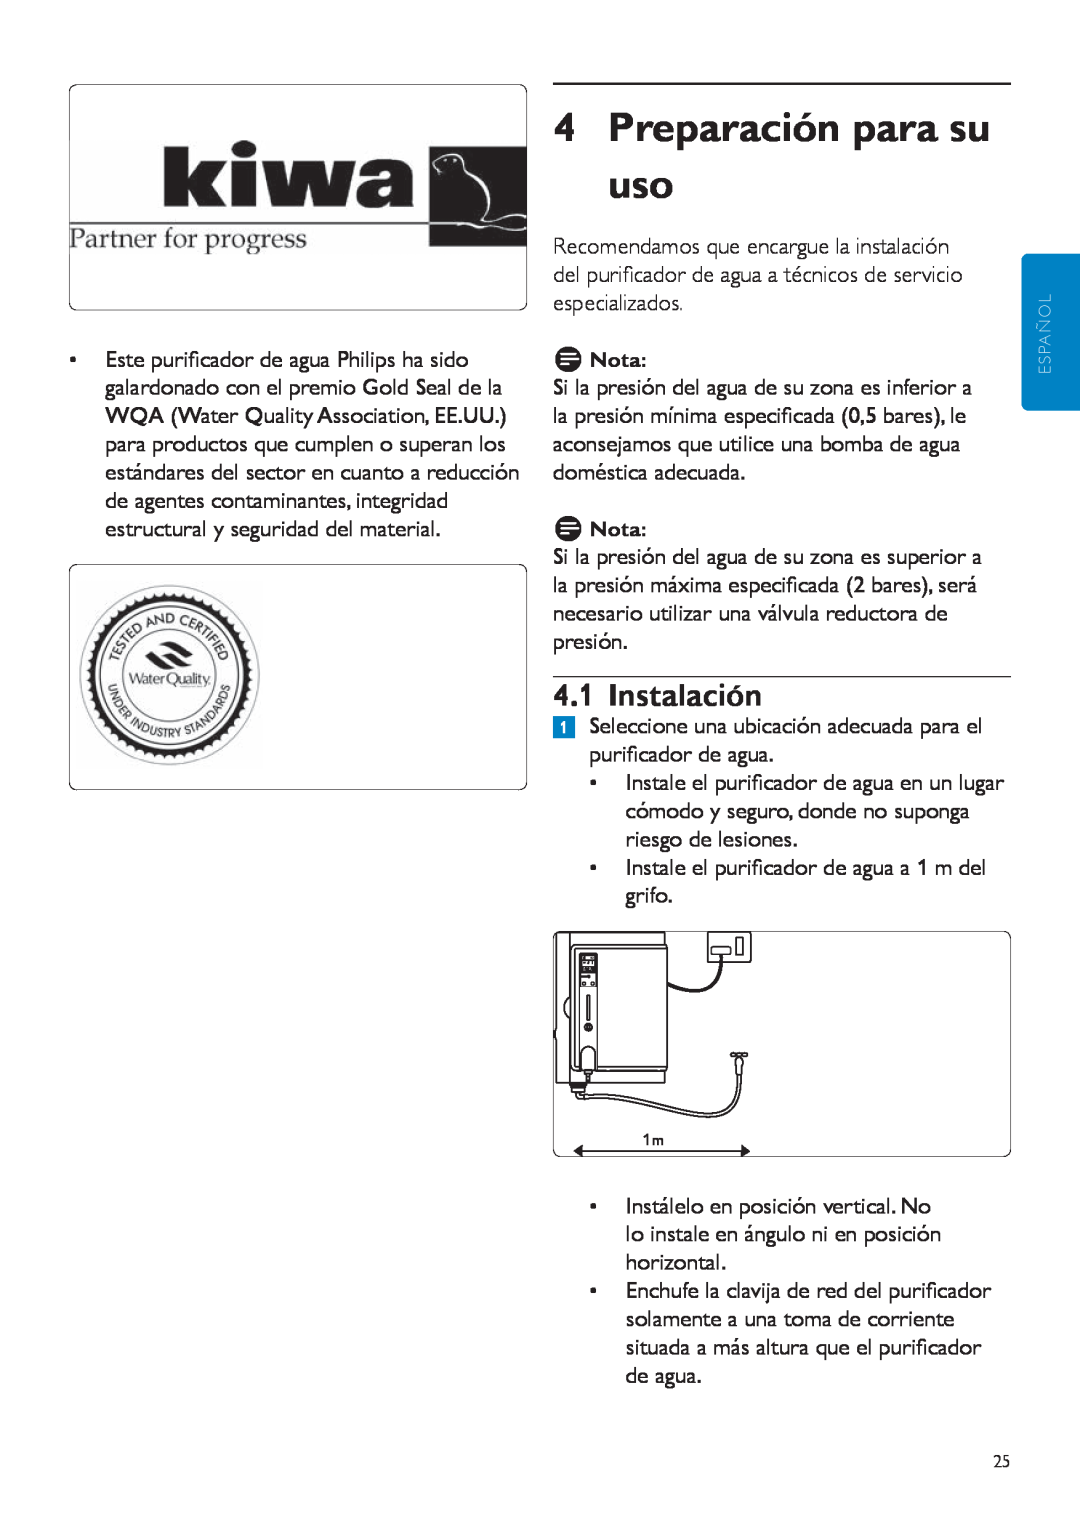 Philips WP3890, WP3891 user manual 4Preparación para su uso, Instalación 